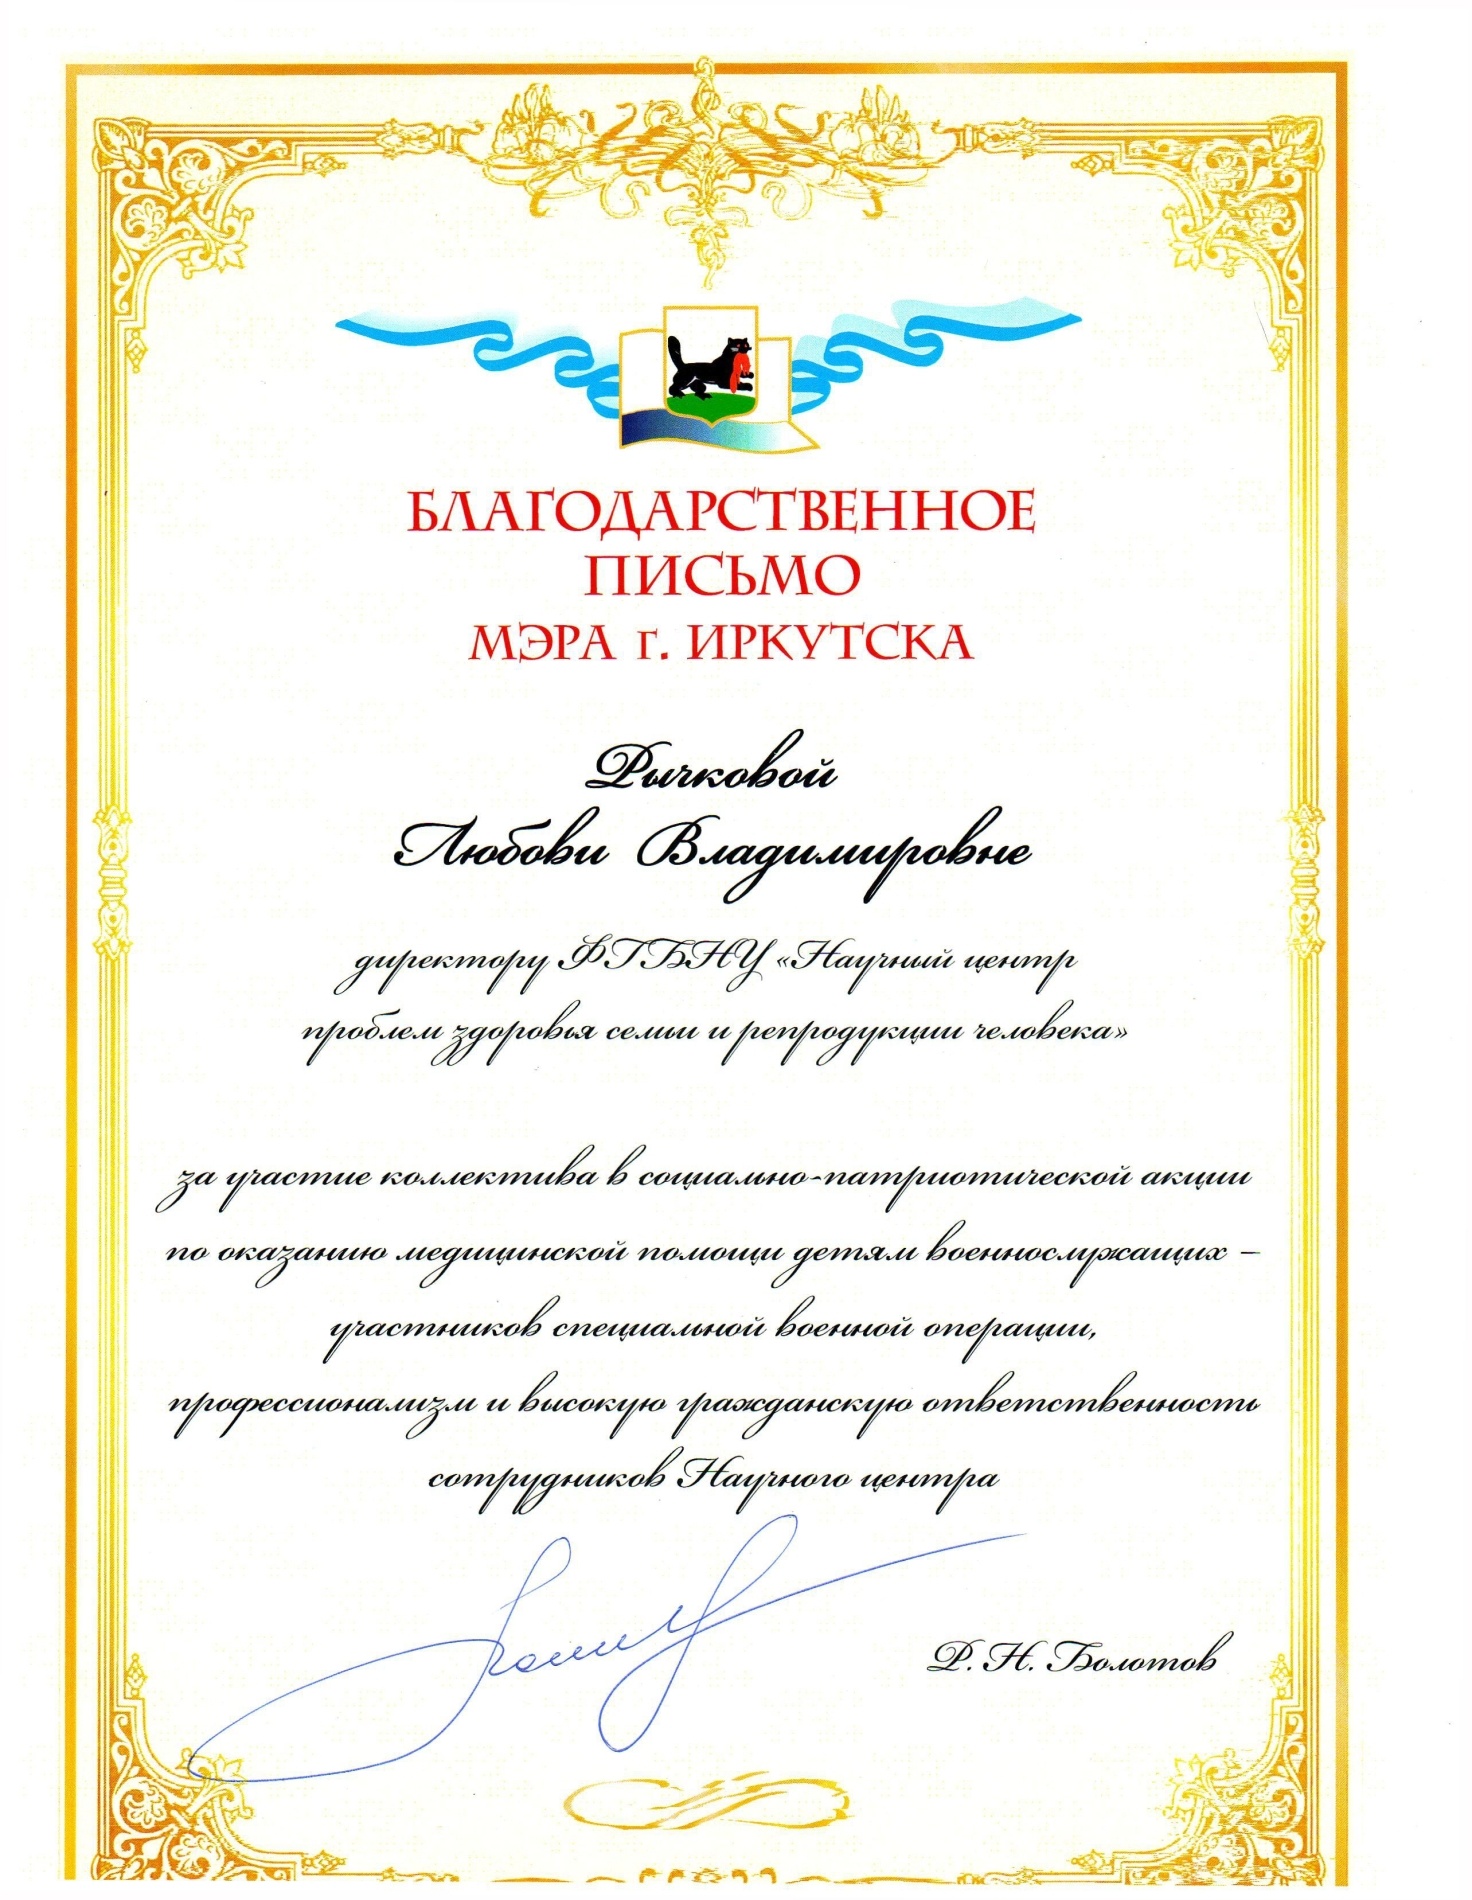 Сертификат_page-0001 (1).jpg